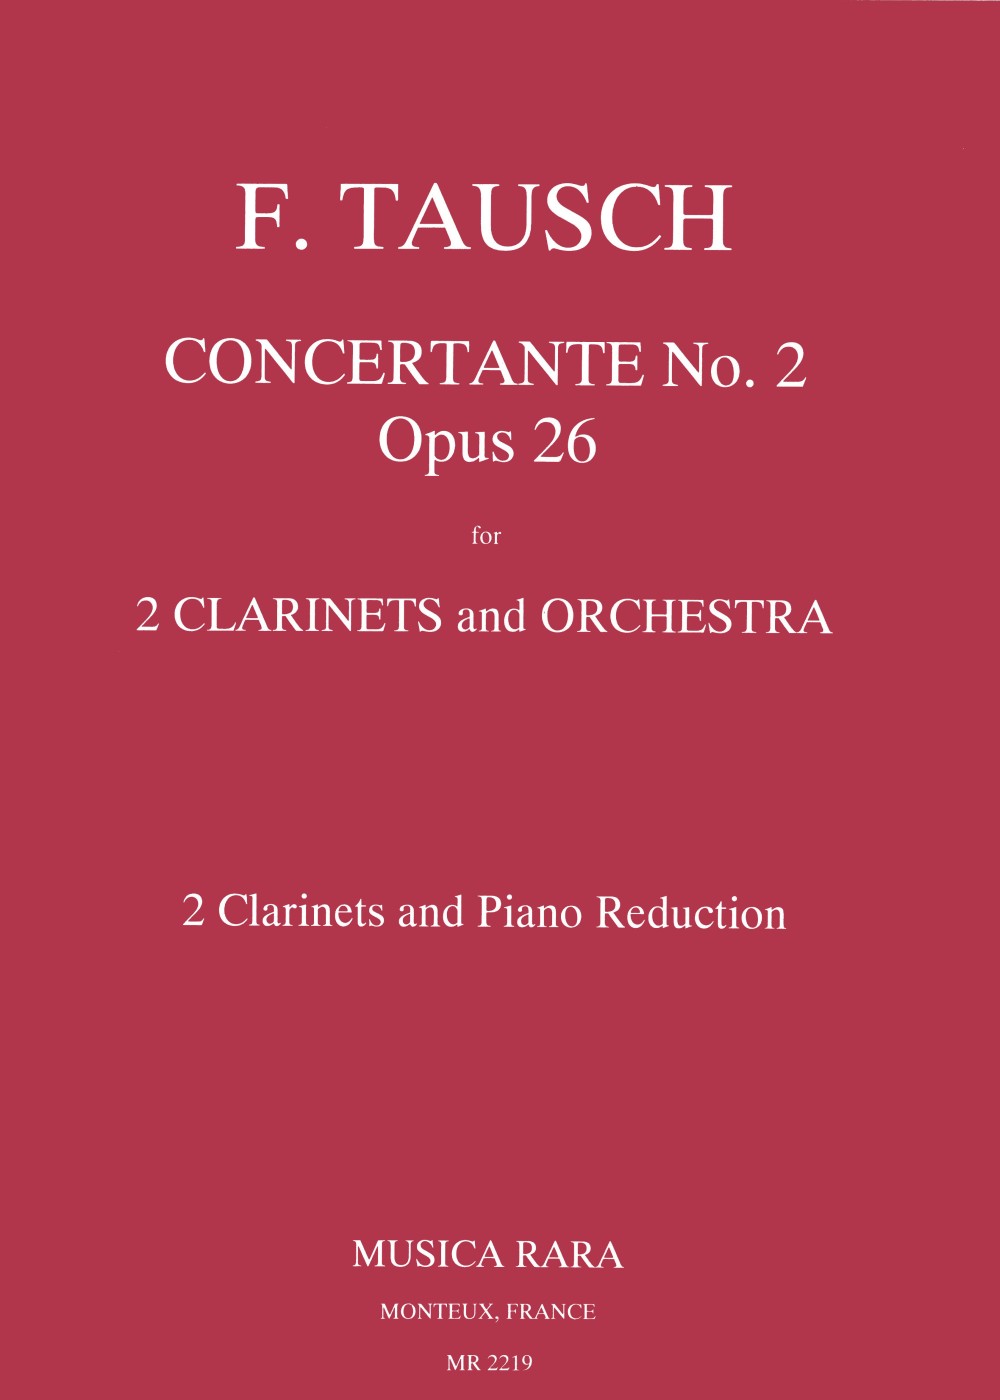 Tausch: Concertante No. 2, Op. 26